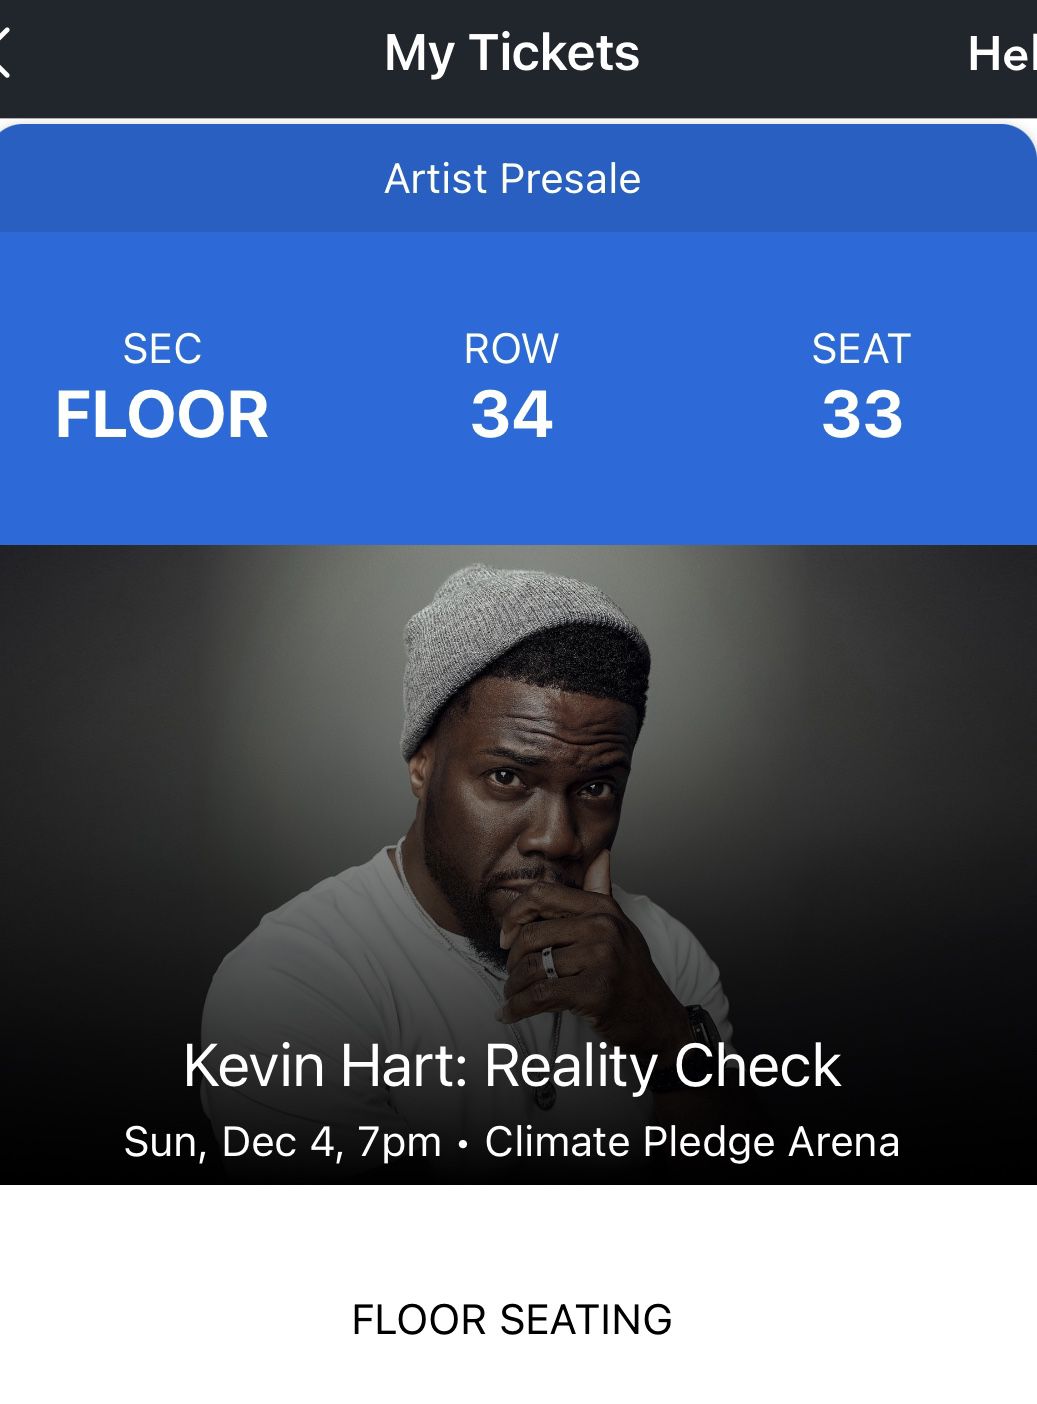 Kevin Hart Live. Dec.4th Show